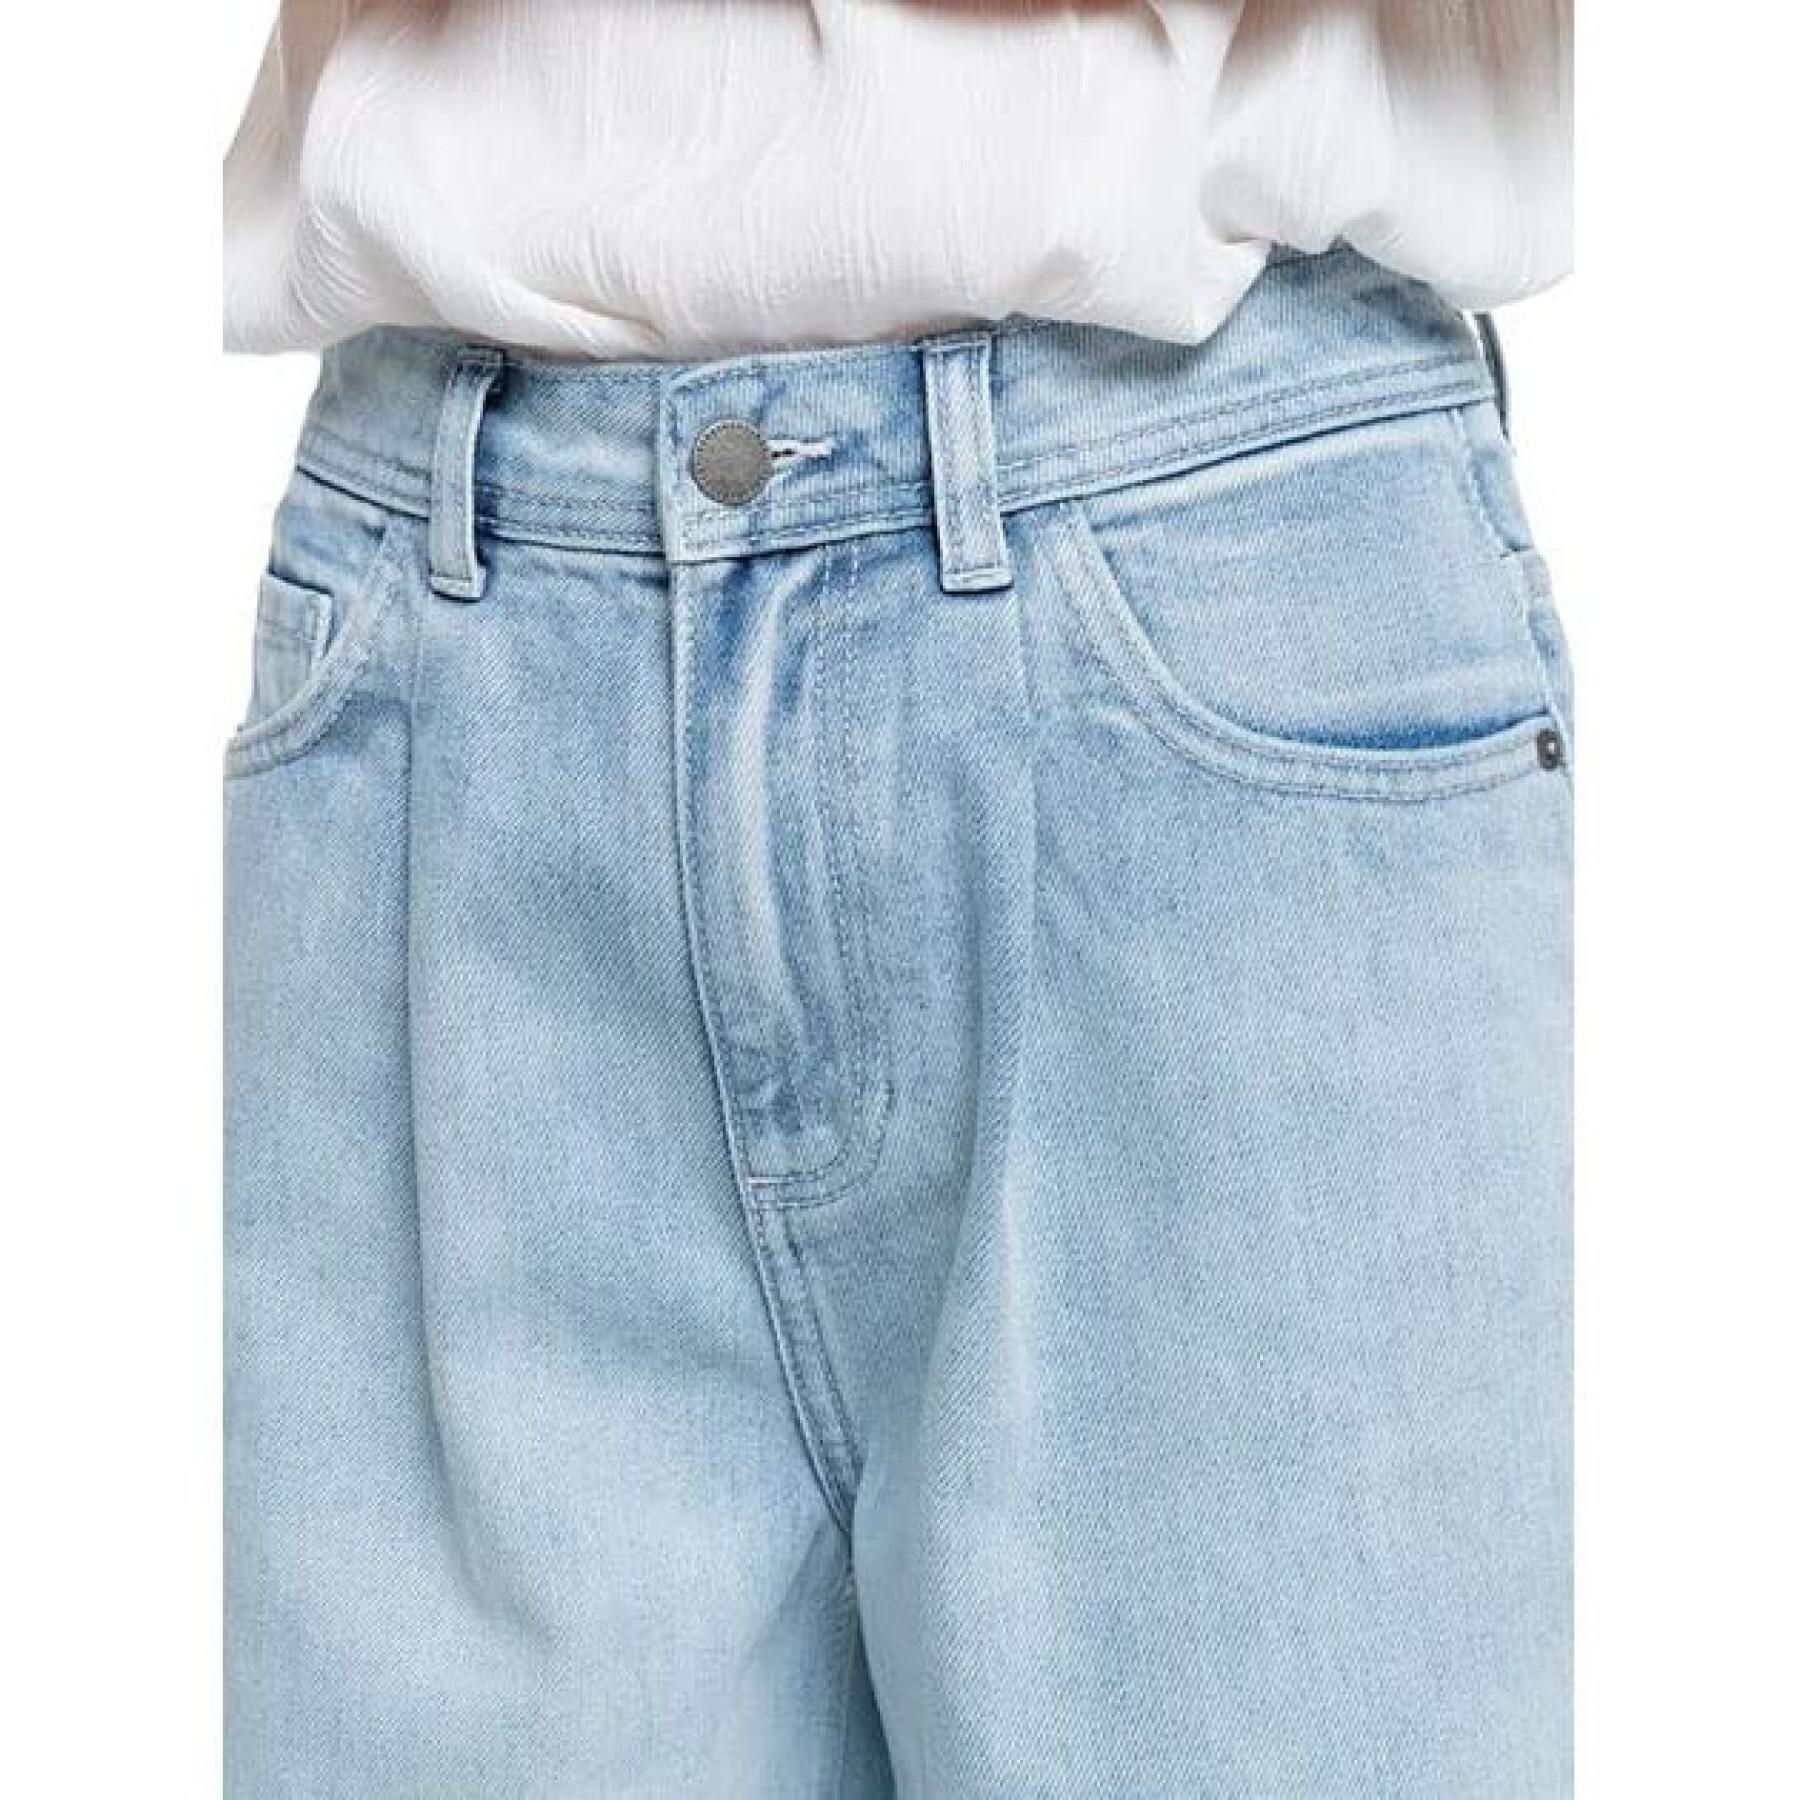 Women's jeans Roxy Opposite Way High